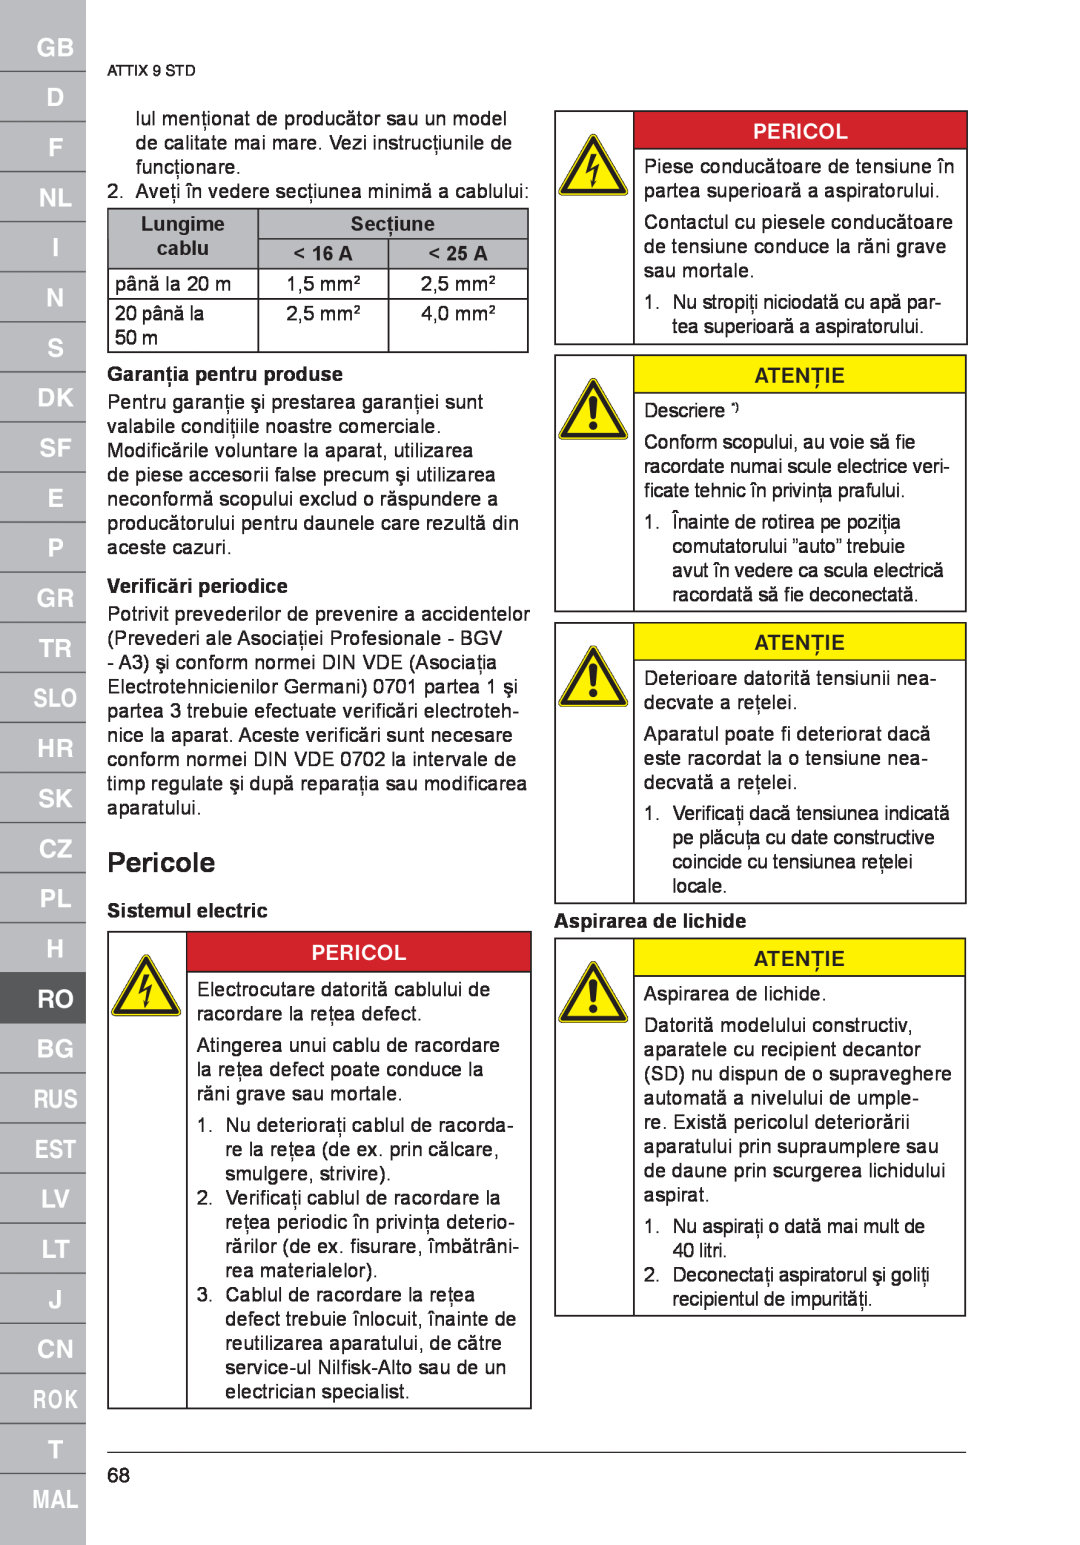 Nilfisk-ALTO 961-01 Pericole, Lungime, Secţiune, Garanţia pentru produse, Veriﬁcări periodice, Sistemul electric, Atenţie 